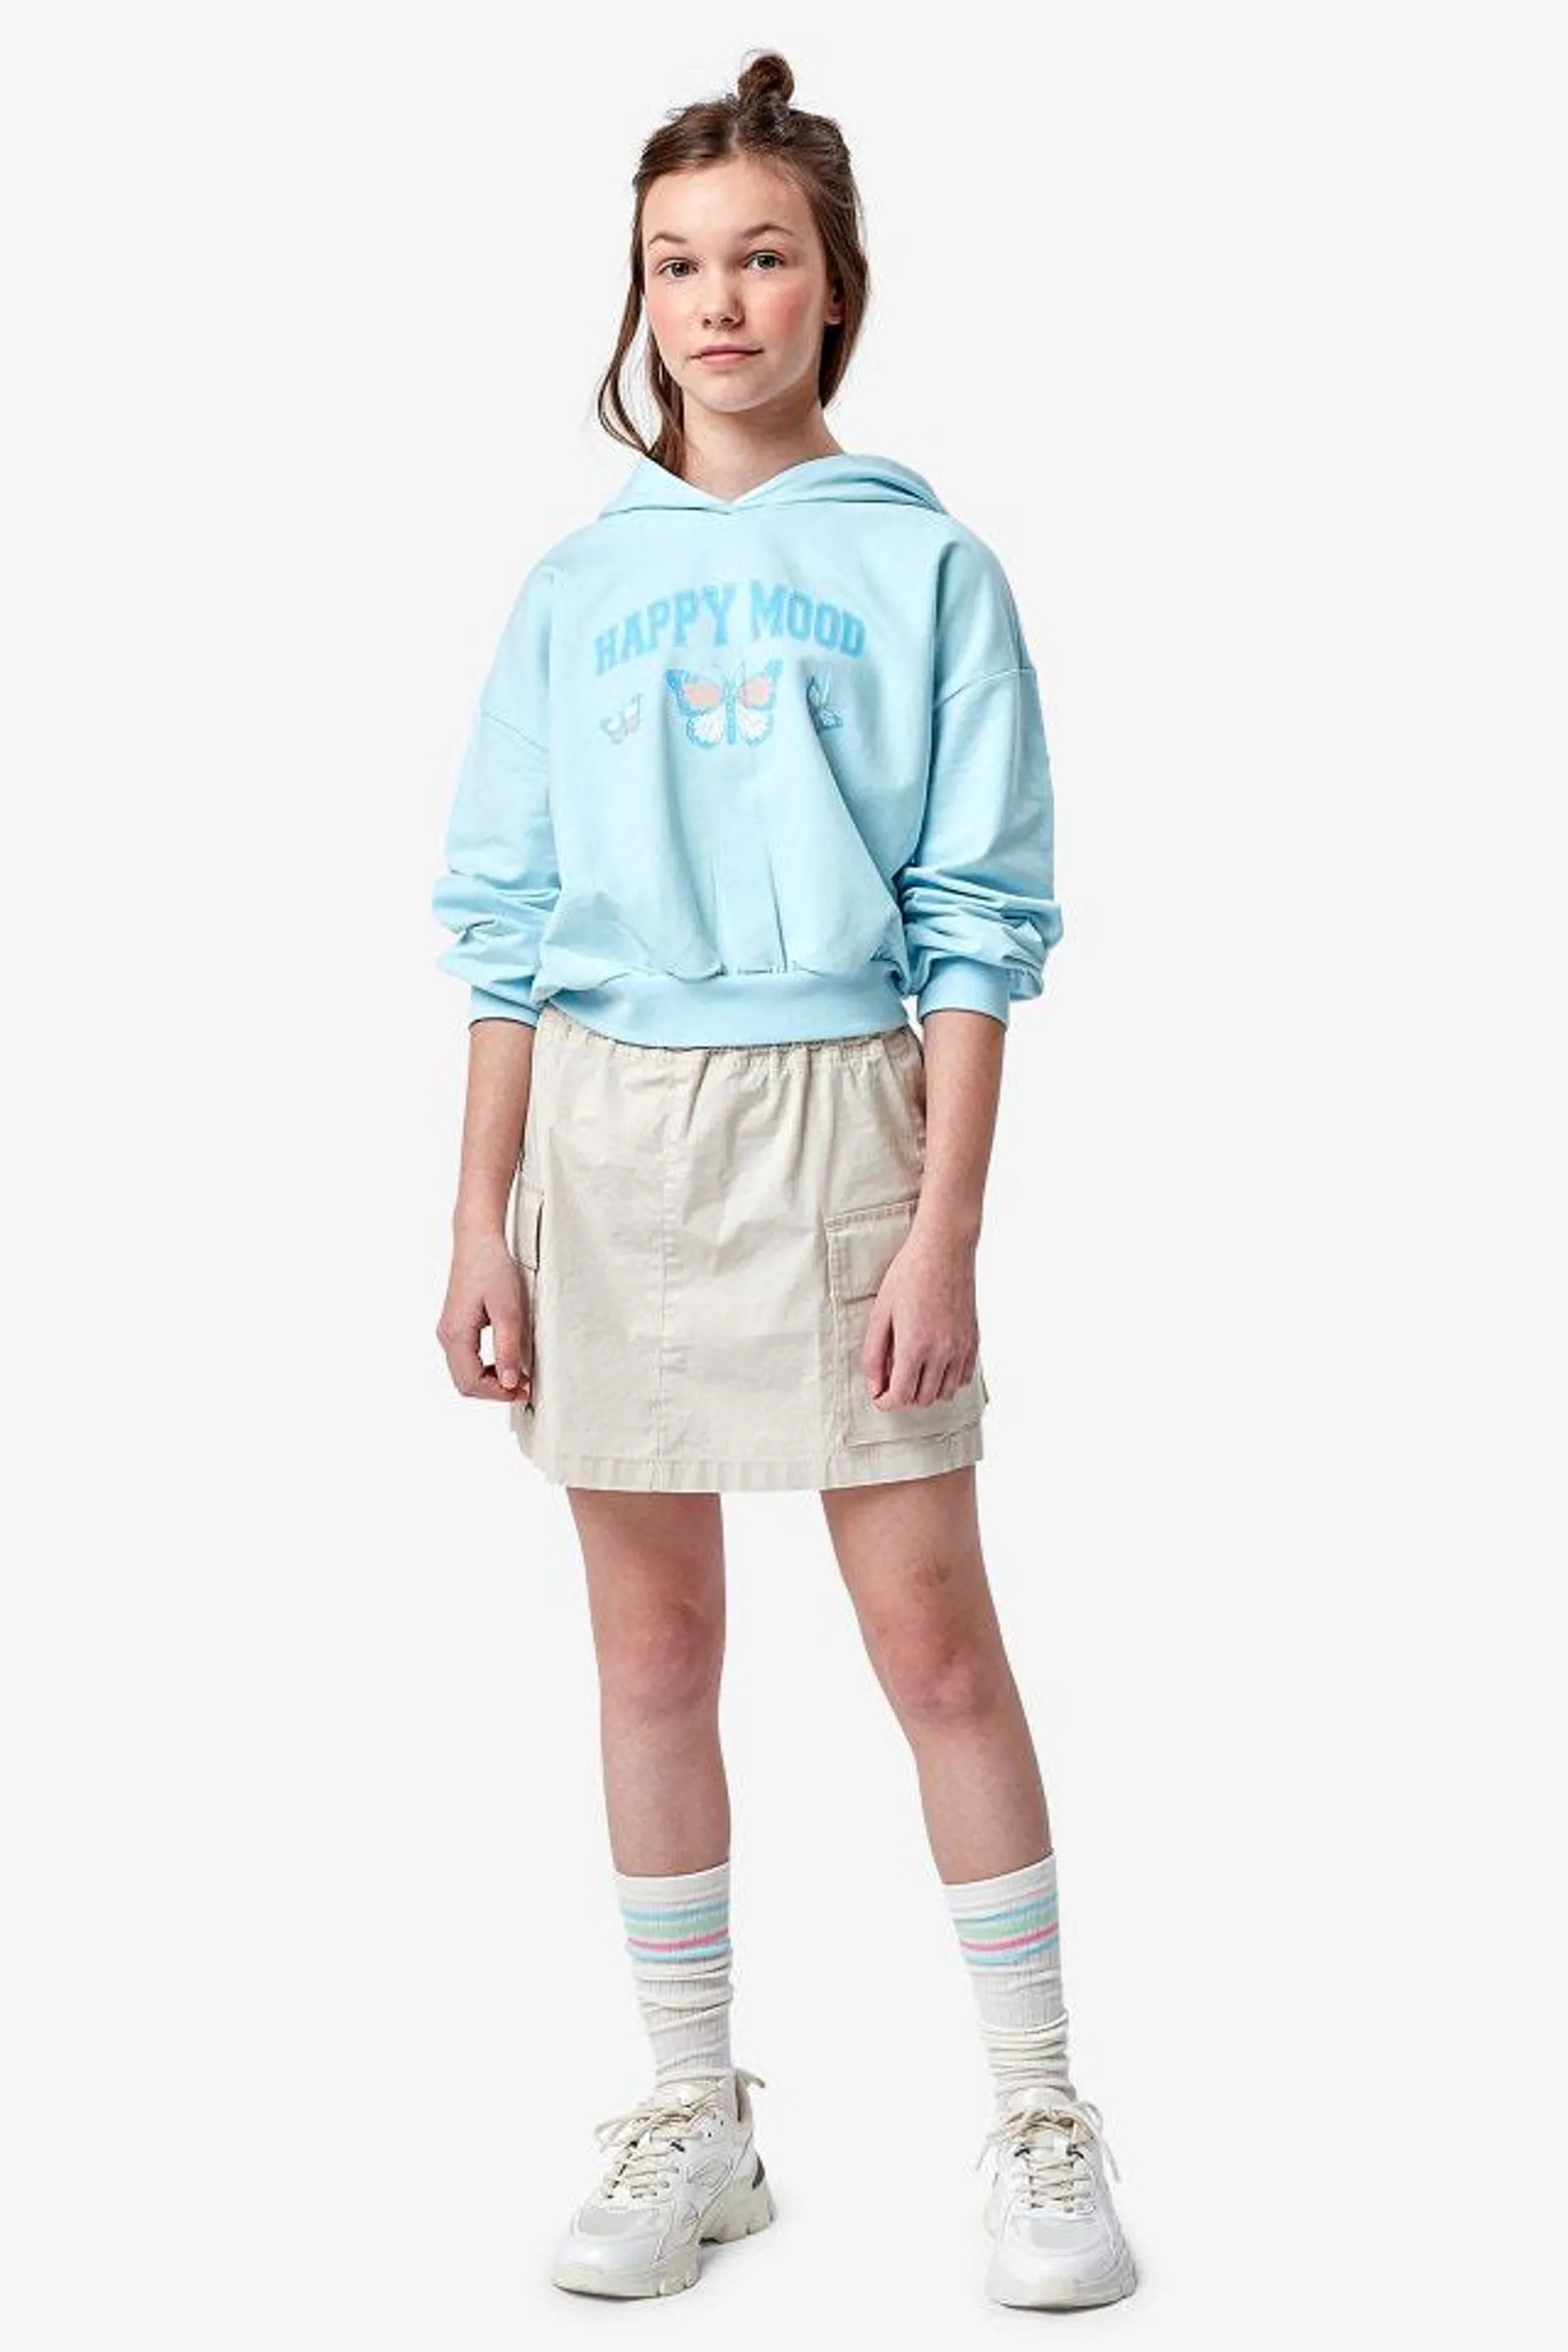 Lichtblauwe cropped hoodie met print Happy mood